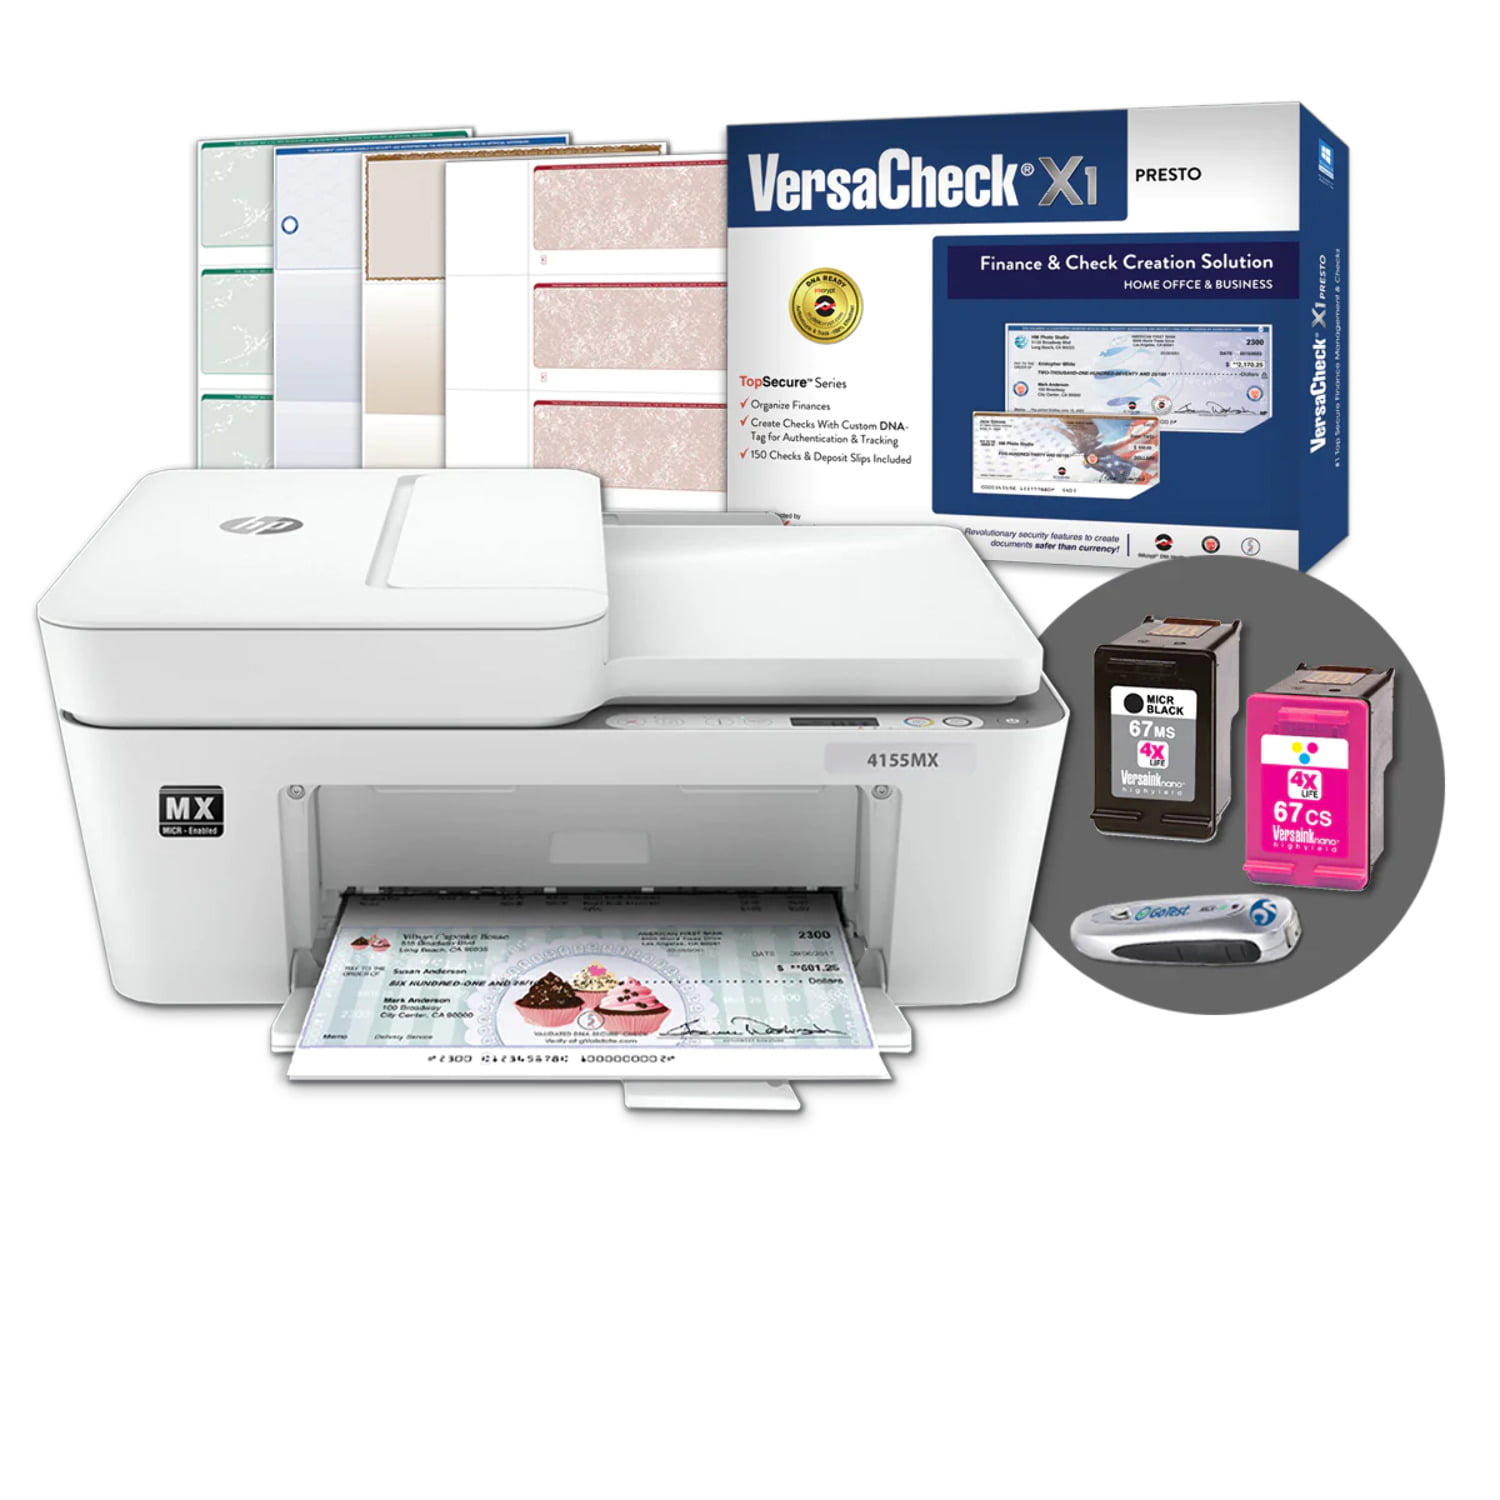 VersaCheck HP DeskJet 4155 MXE MICR All-in-One Check Printer and VersaCheck Presto Check Printing Software Bundle, (4155 MX) - Walmart.com